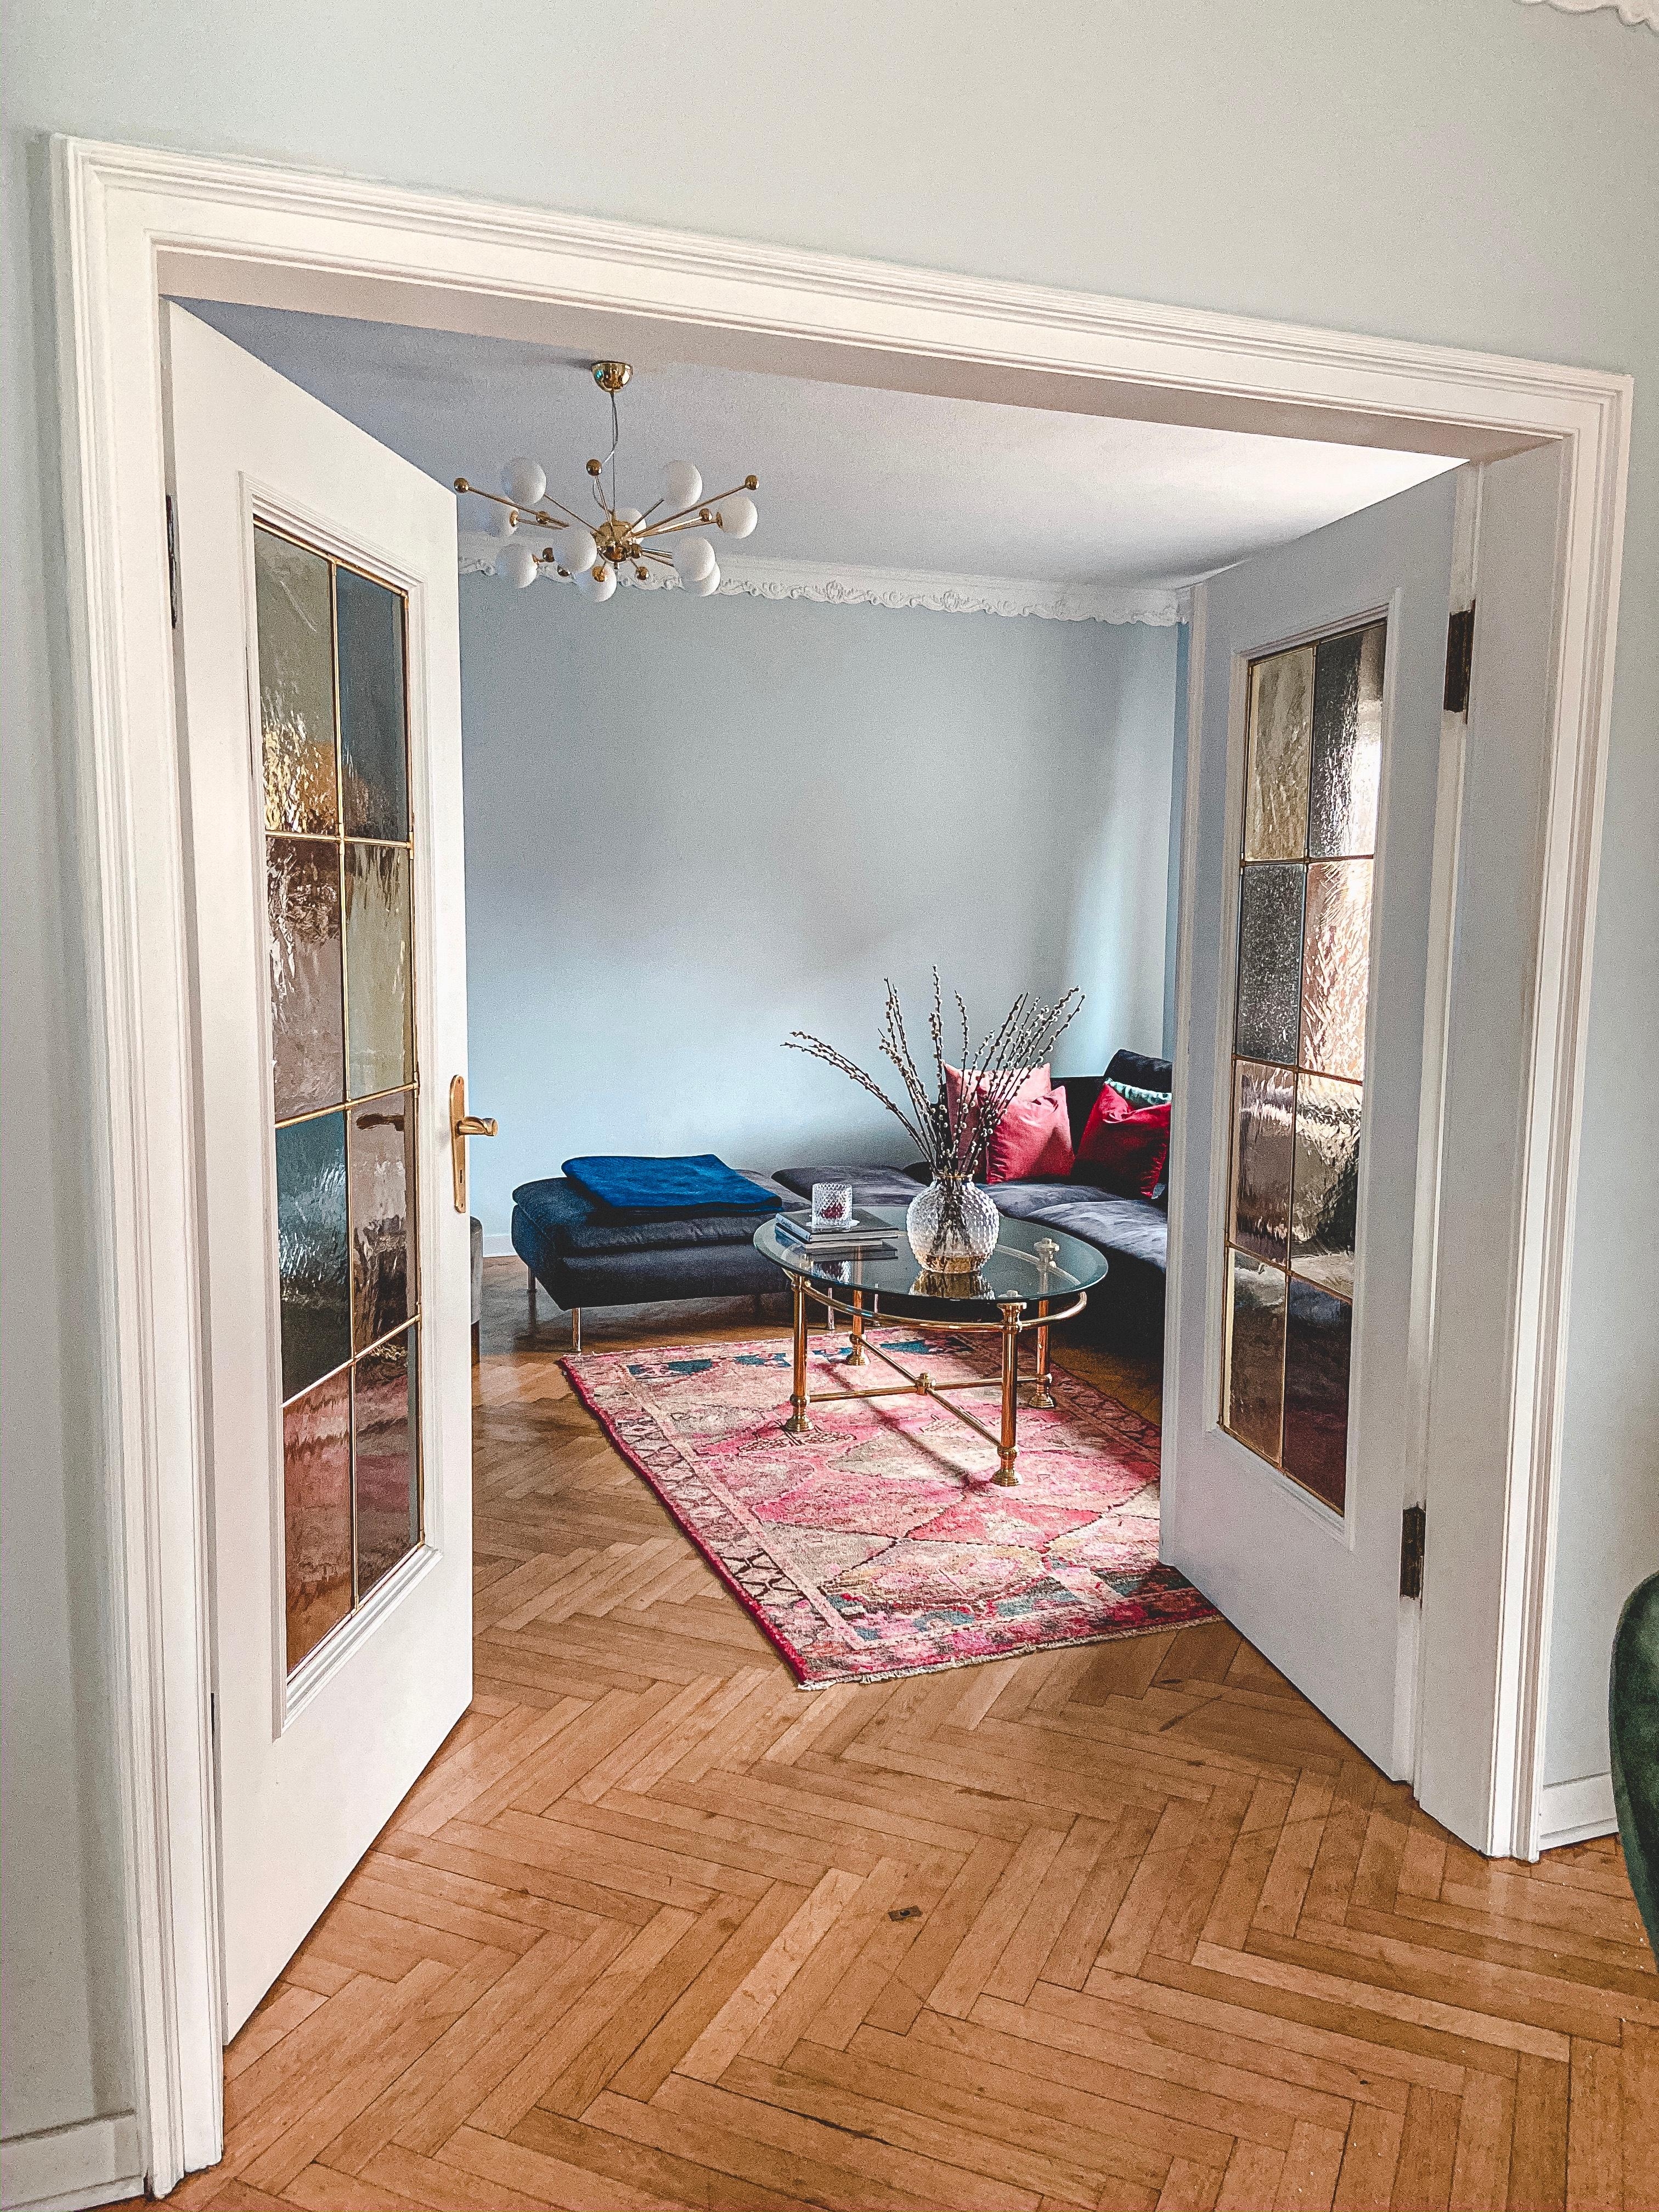 Hallo von meinem Lieblingsort♥️ 
#wohnzimmer #altbau #couchstyle